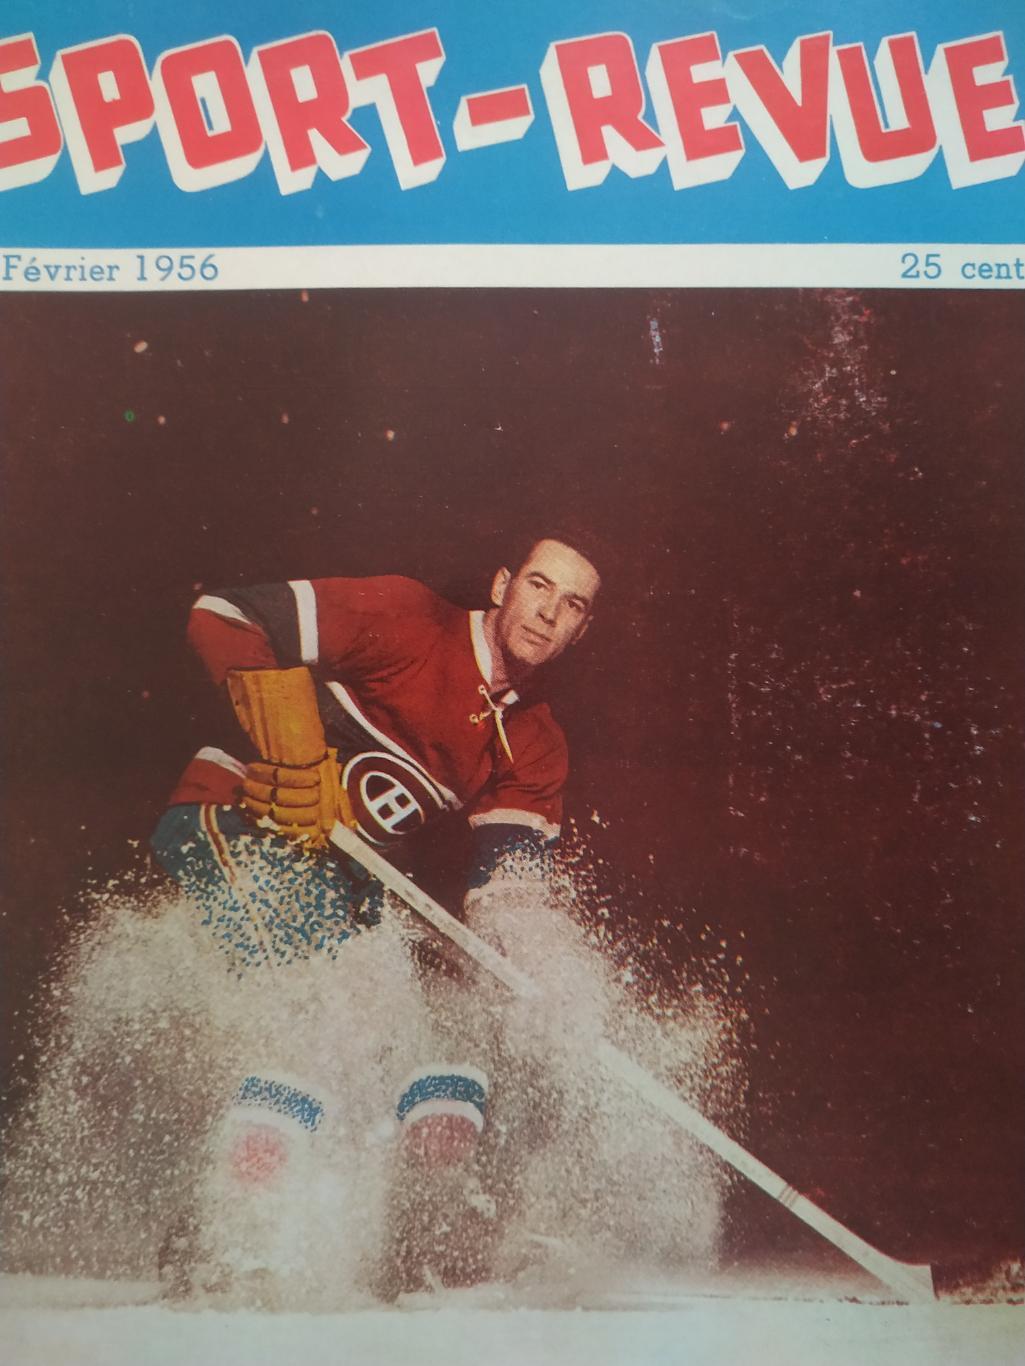 ХОККЕЙ ЖУРНАЛ ЕЖЕМЕСЯЧНИК СПОРТ РЕВЬЮ НХЛ NHL 1956 FEBRIER SPORT REVUE